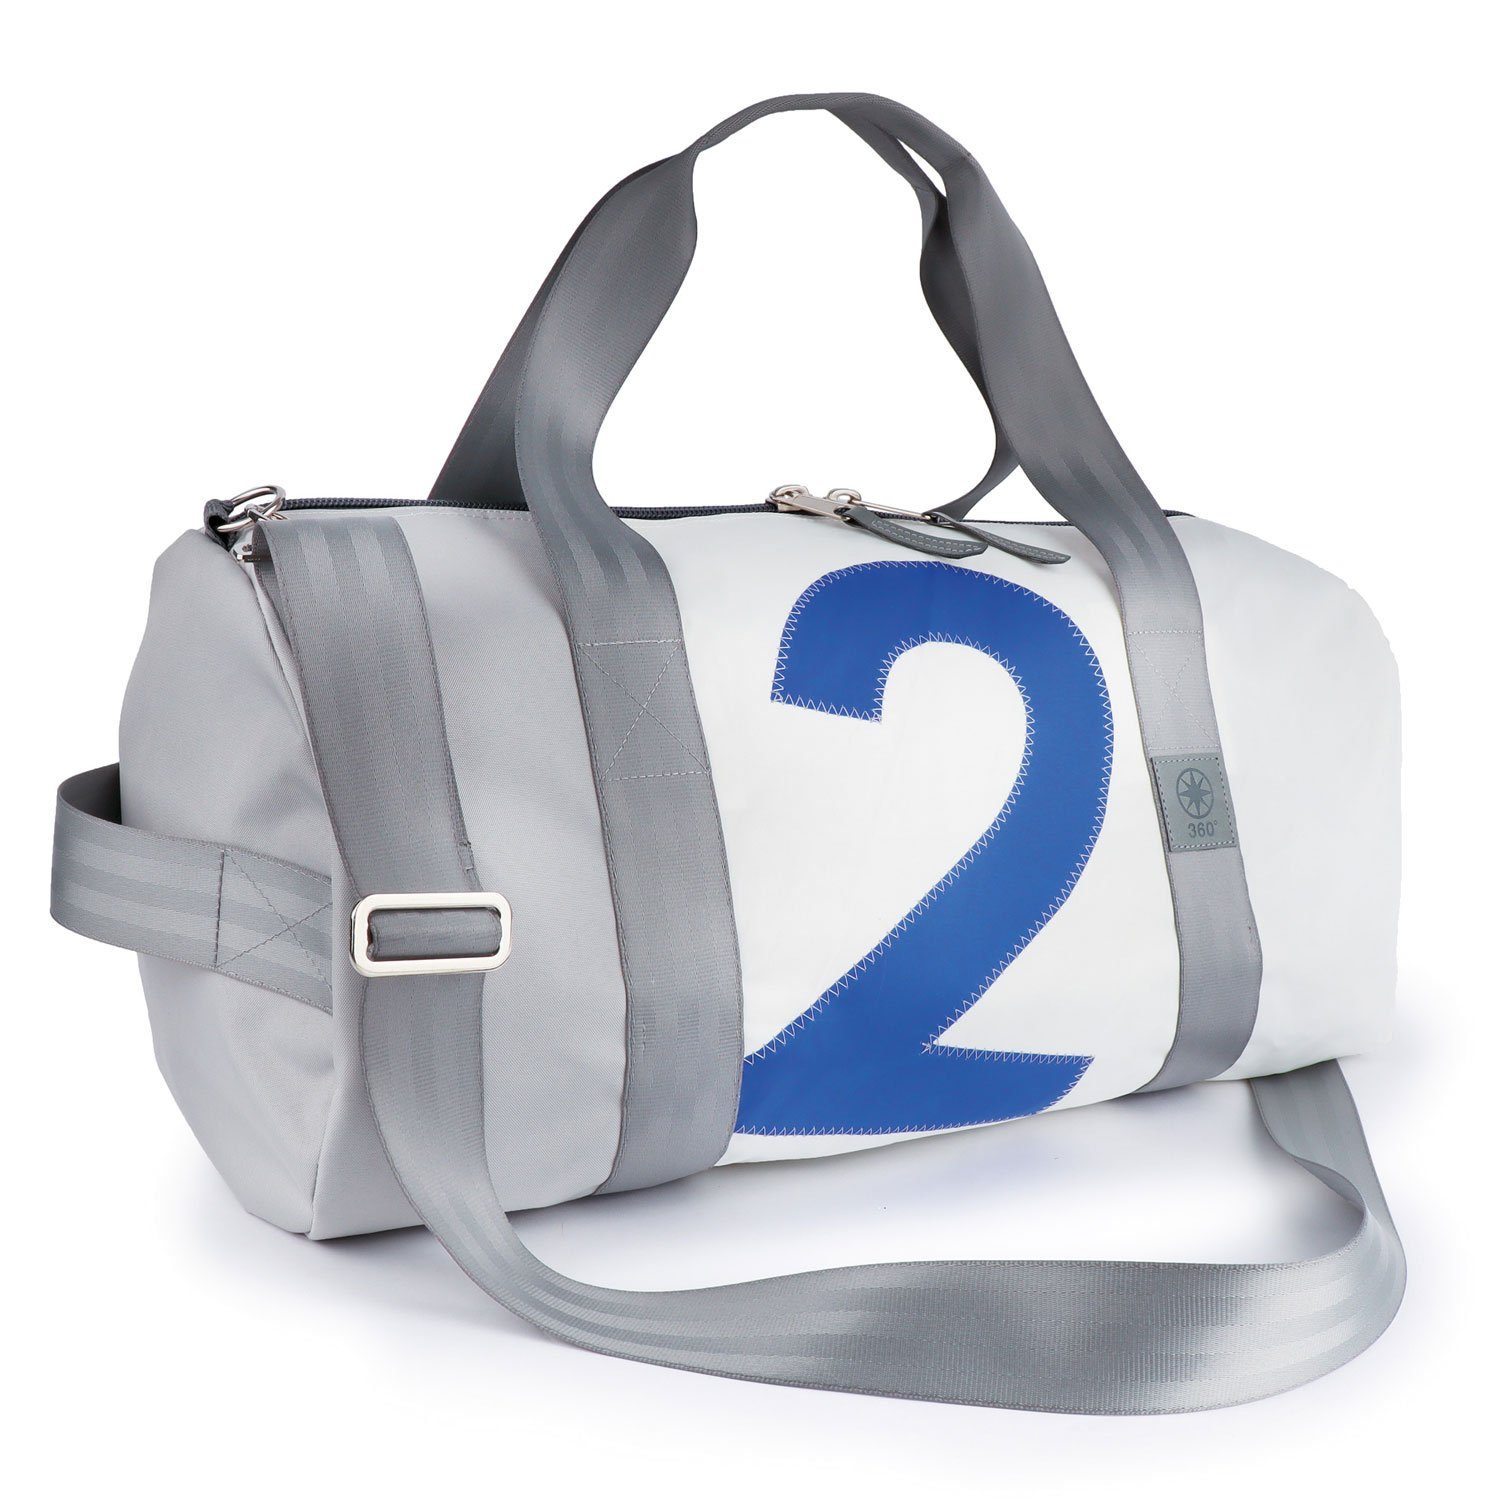 360Grad Reisetasche Pirat Umhänge-Tasche Segeltuch weiß-grau, Zahl blau